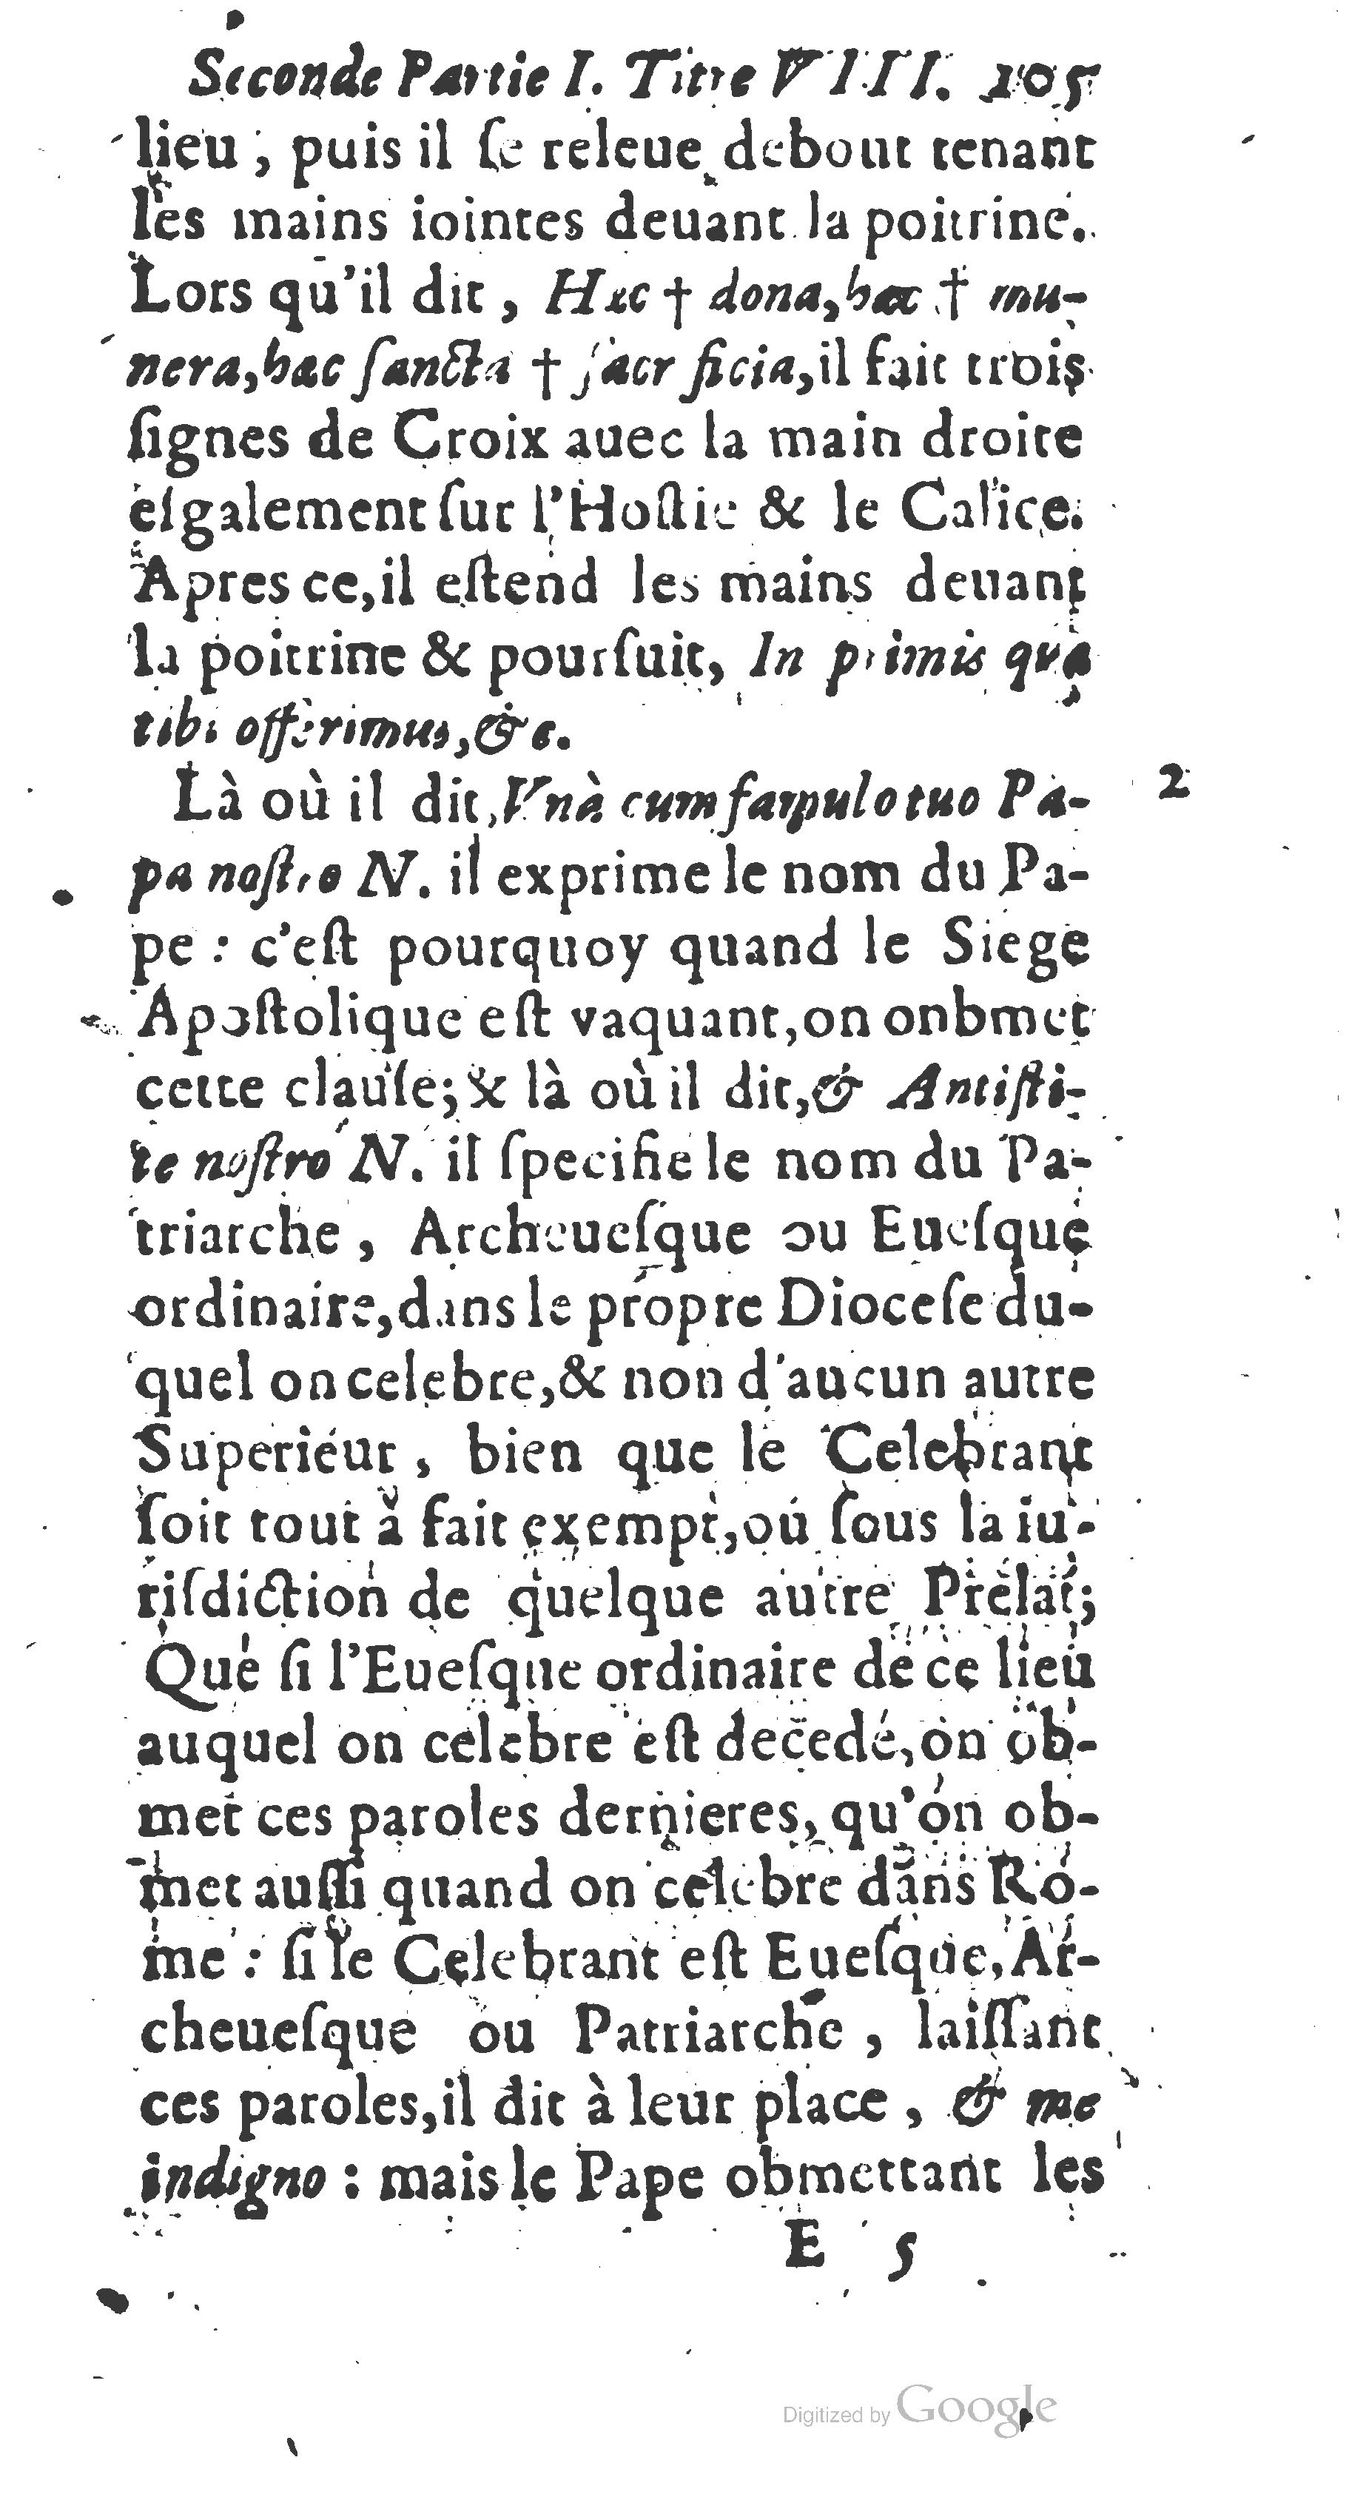 1651 Abrégé du trésor des cérémonies ecclésiastiques Guillermet_BM Lyon_Page_124.jpg